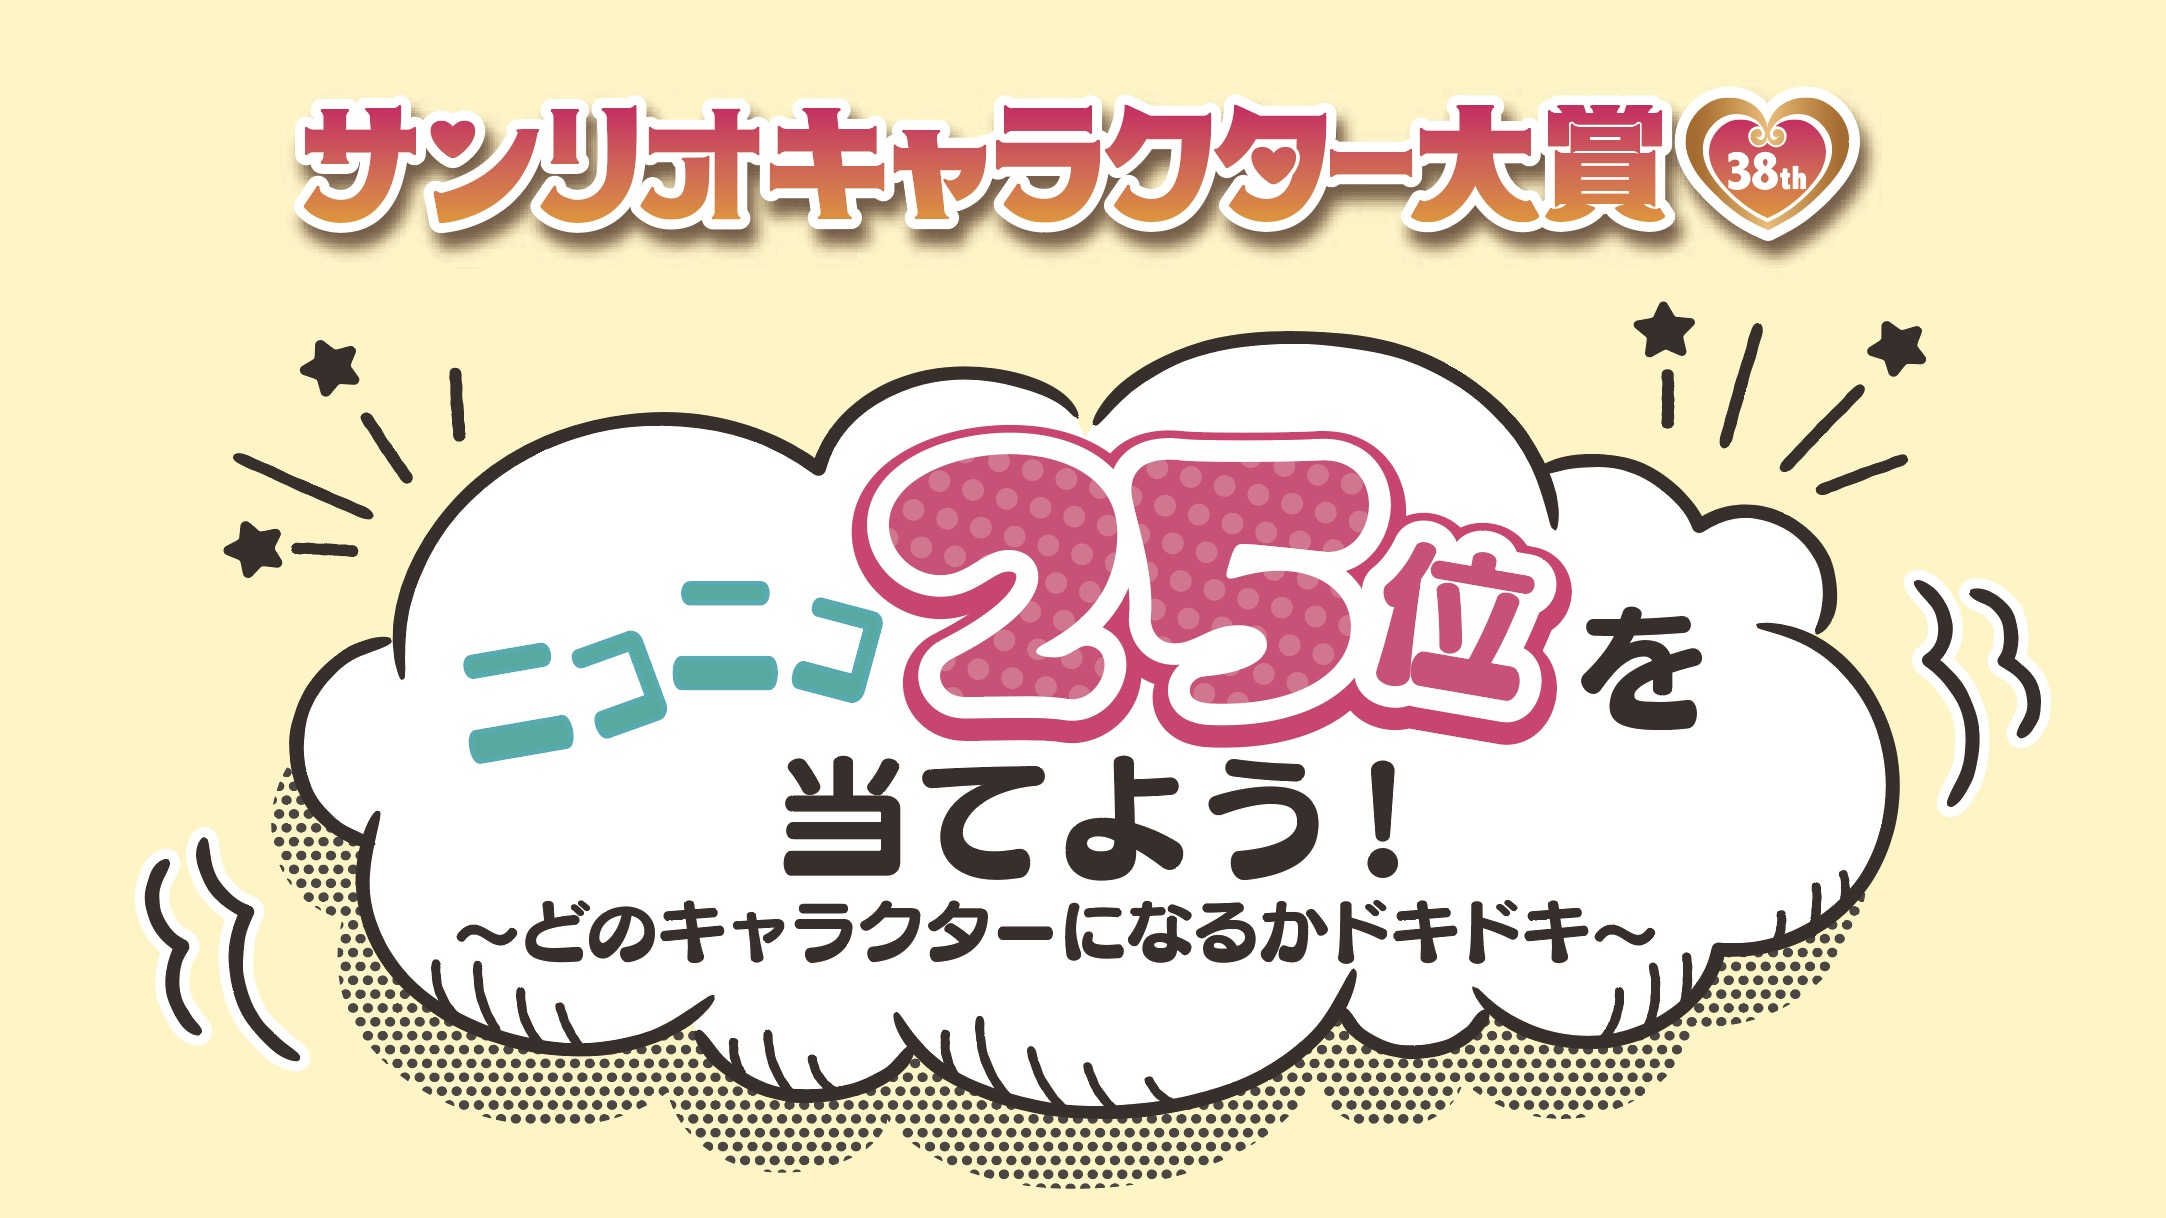 「Sanrio＋」限定企画「ニコニコ25位を当てよう！〜どのキャラクターになるかドキドキ〜」